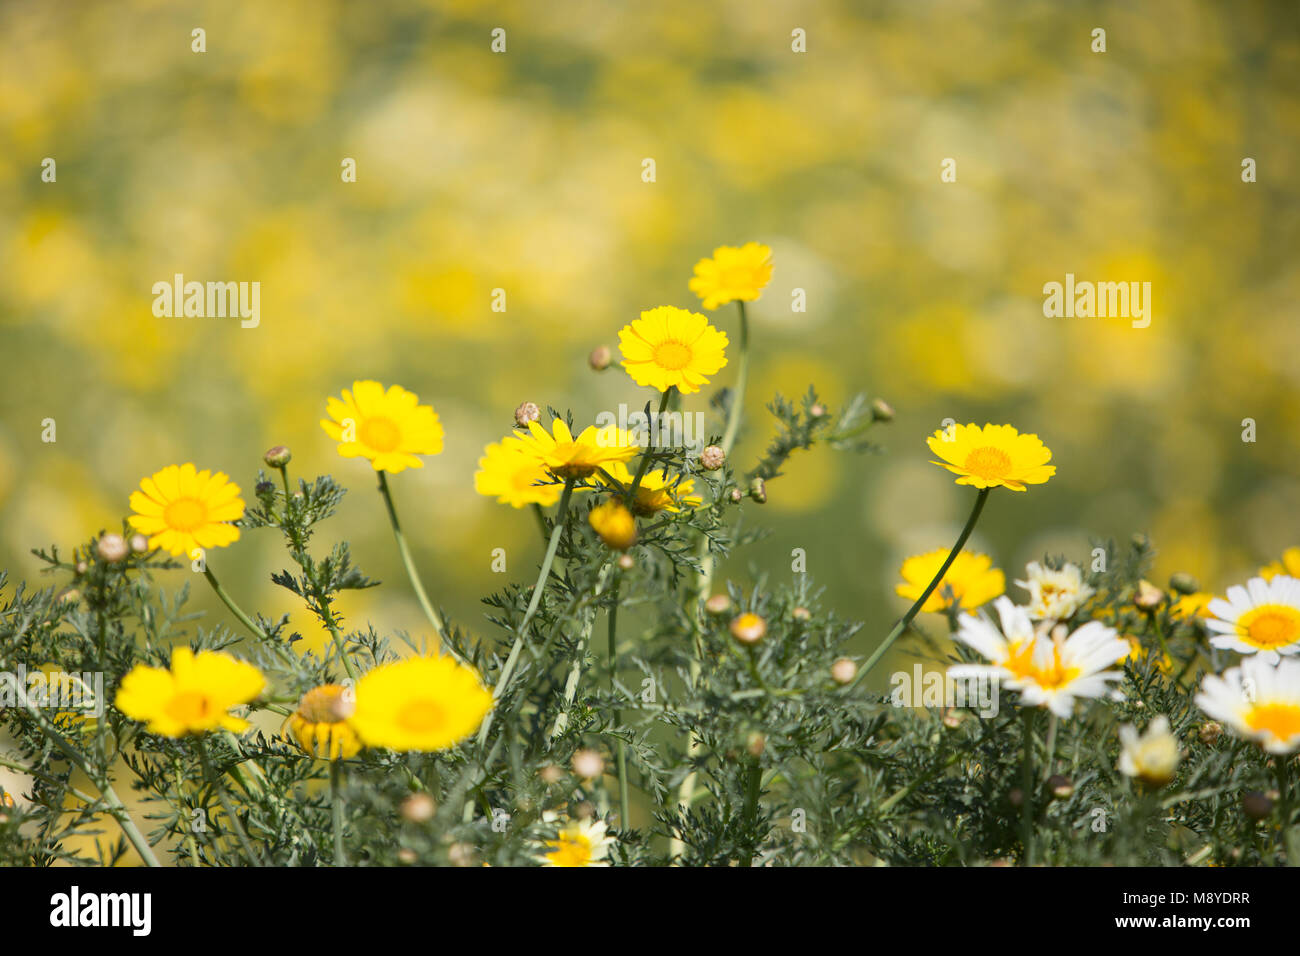 Giallo e Bianco daisy selvaggio fiore con blur blackground, può utilizzare come sfondo Foto Stock